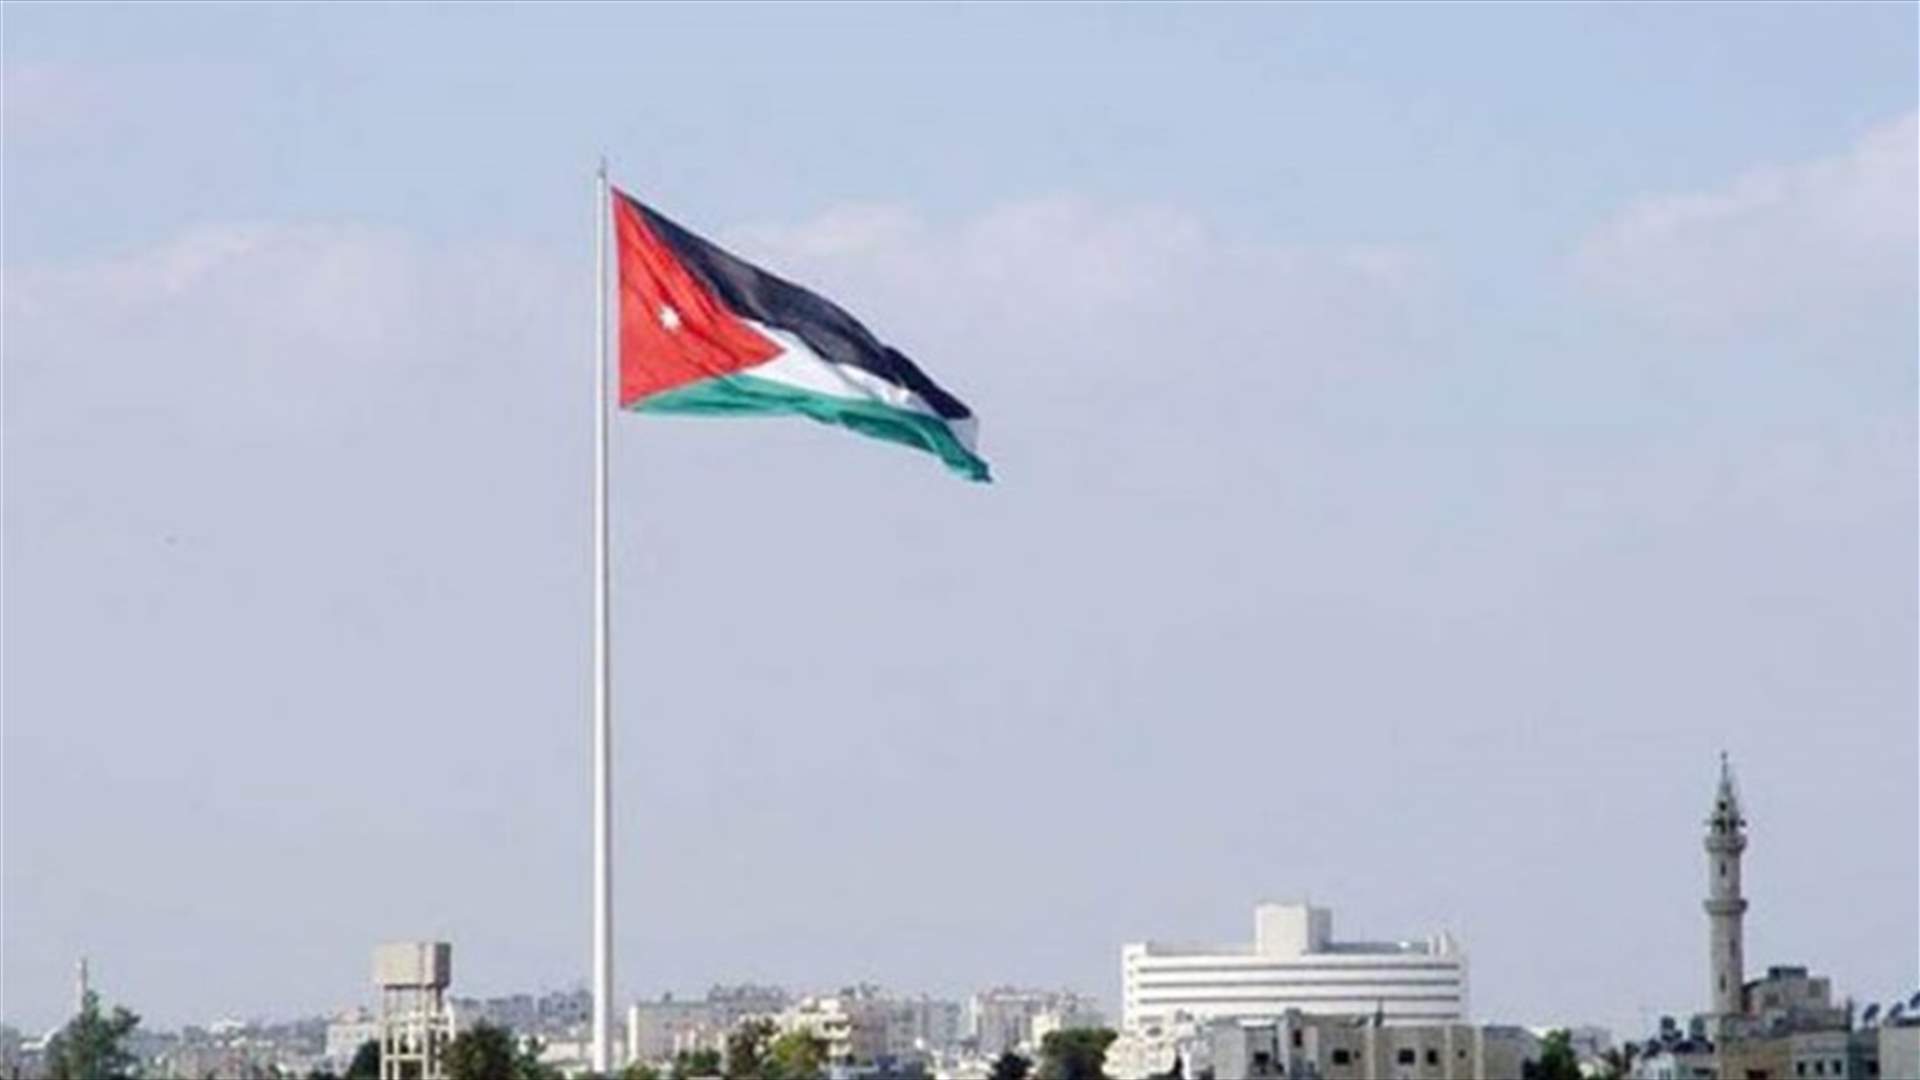 توقيف مدير عام قناة فضائية اردنية ومدير الاخبار فيها اثر تقرير عن حظر التجول